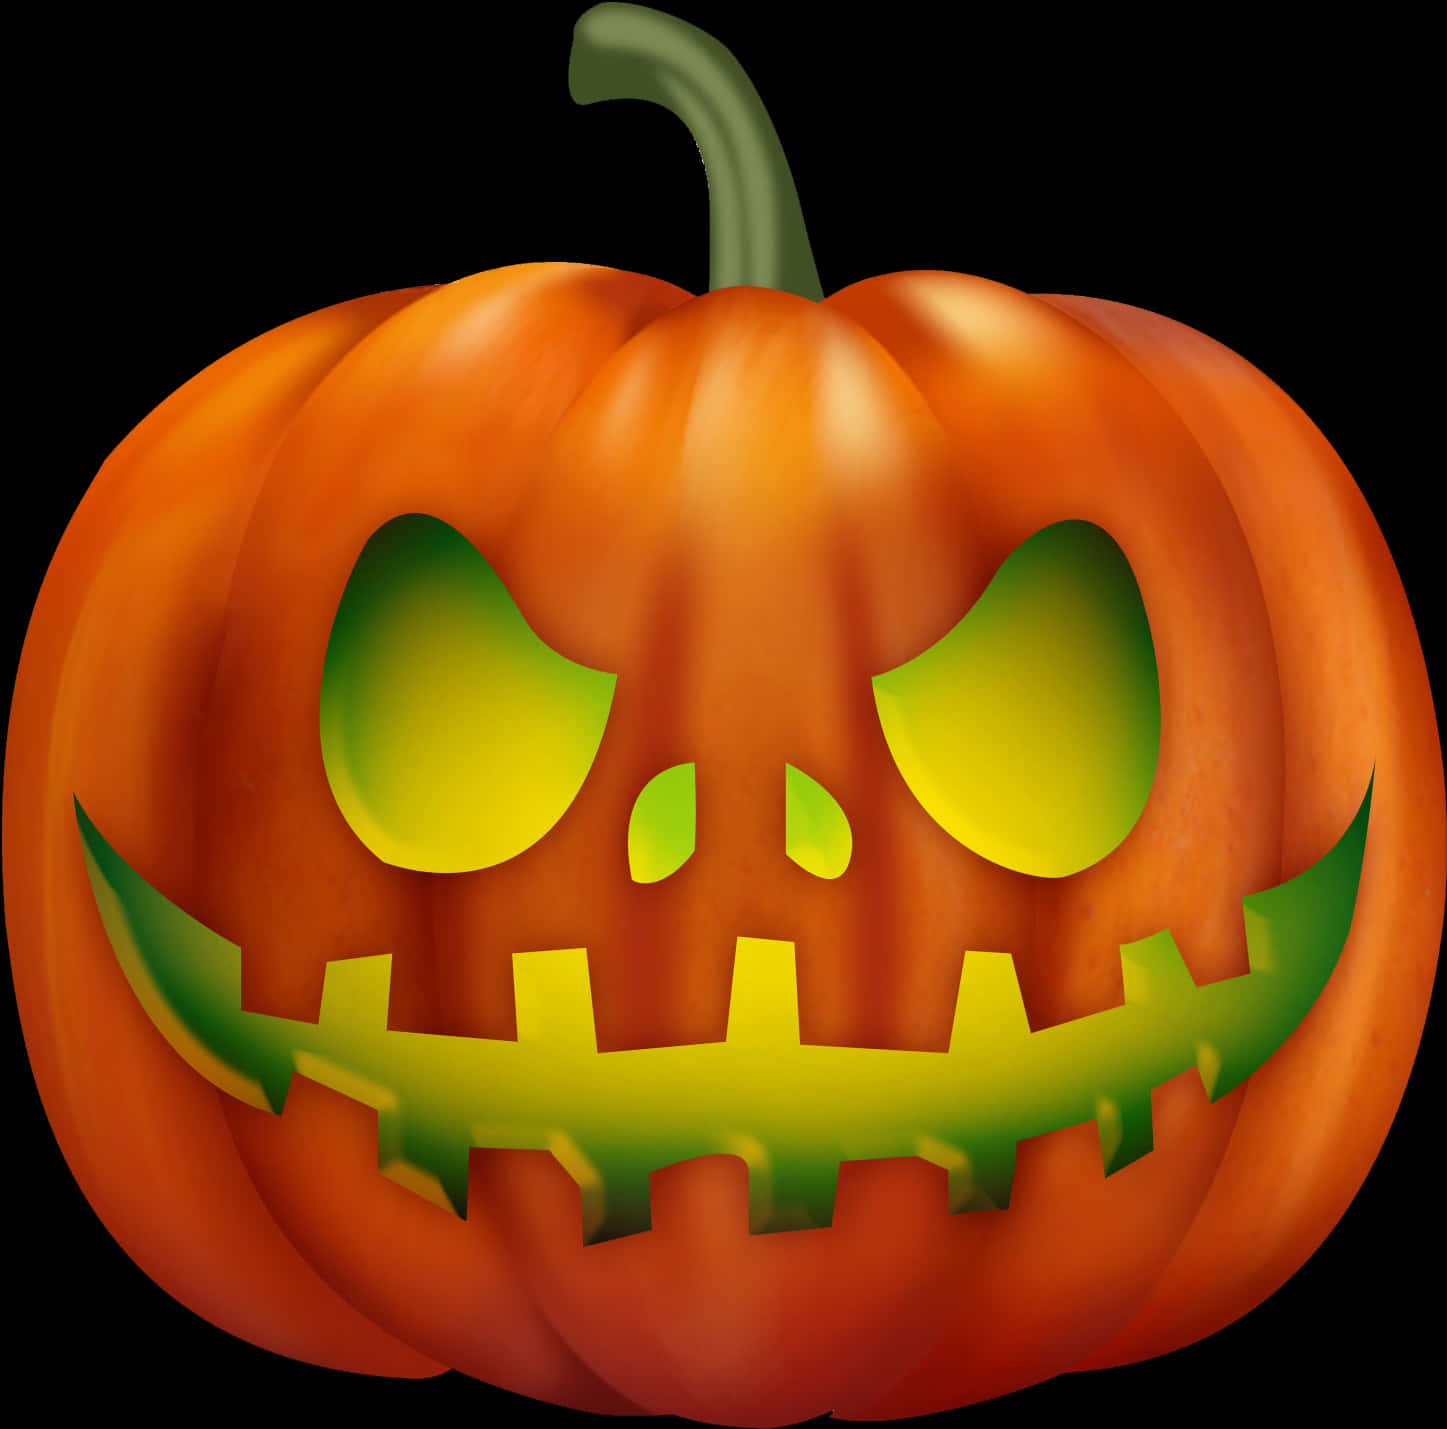 Halloween Jack O Lantern Pumpkin PNG image